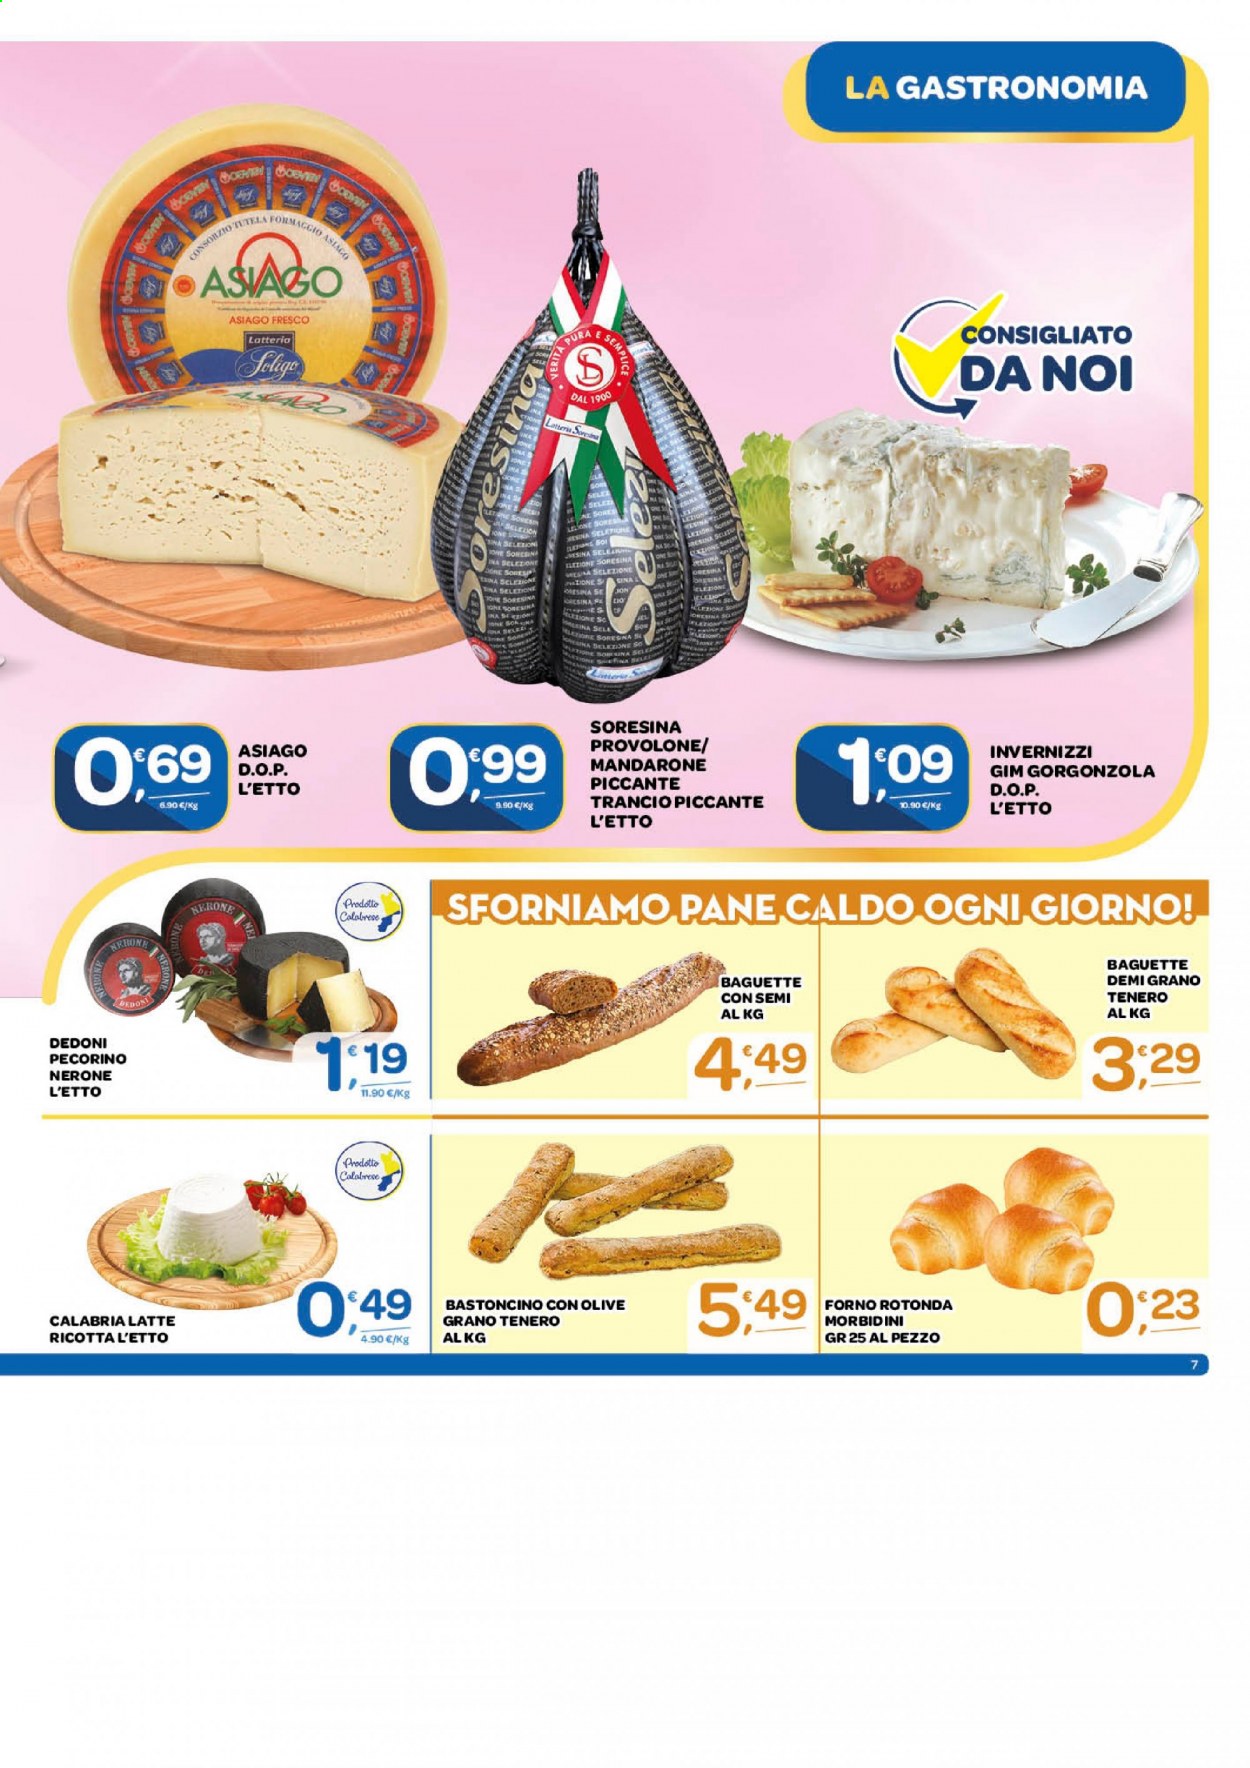 thumbnail - Volantino Carrefour - 3/3/2021 - 15/3/2021 - Prodotti in offerta - pane, baguette, formaggio, provolone, ricotta, pecorino, gorgonzola, Asiago, Invernizzi, Latteria Soresina, latte, forno. Pagina 7.